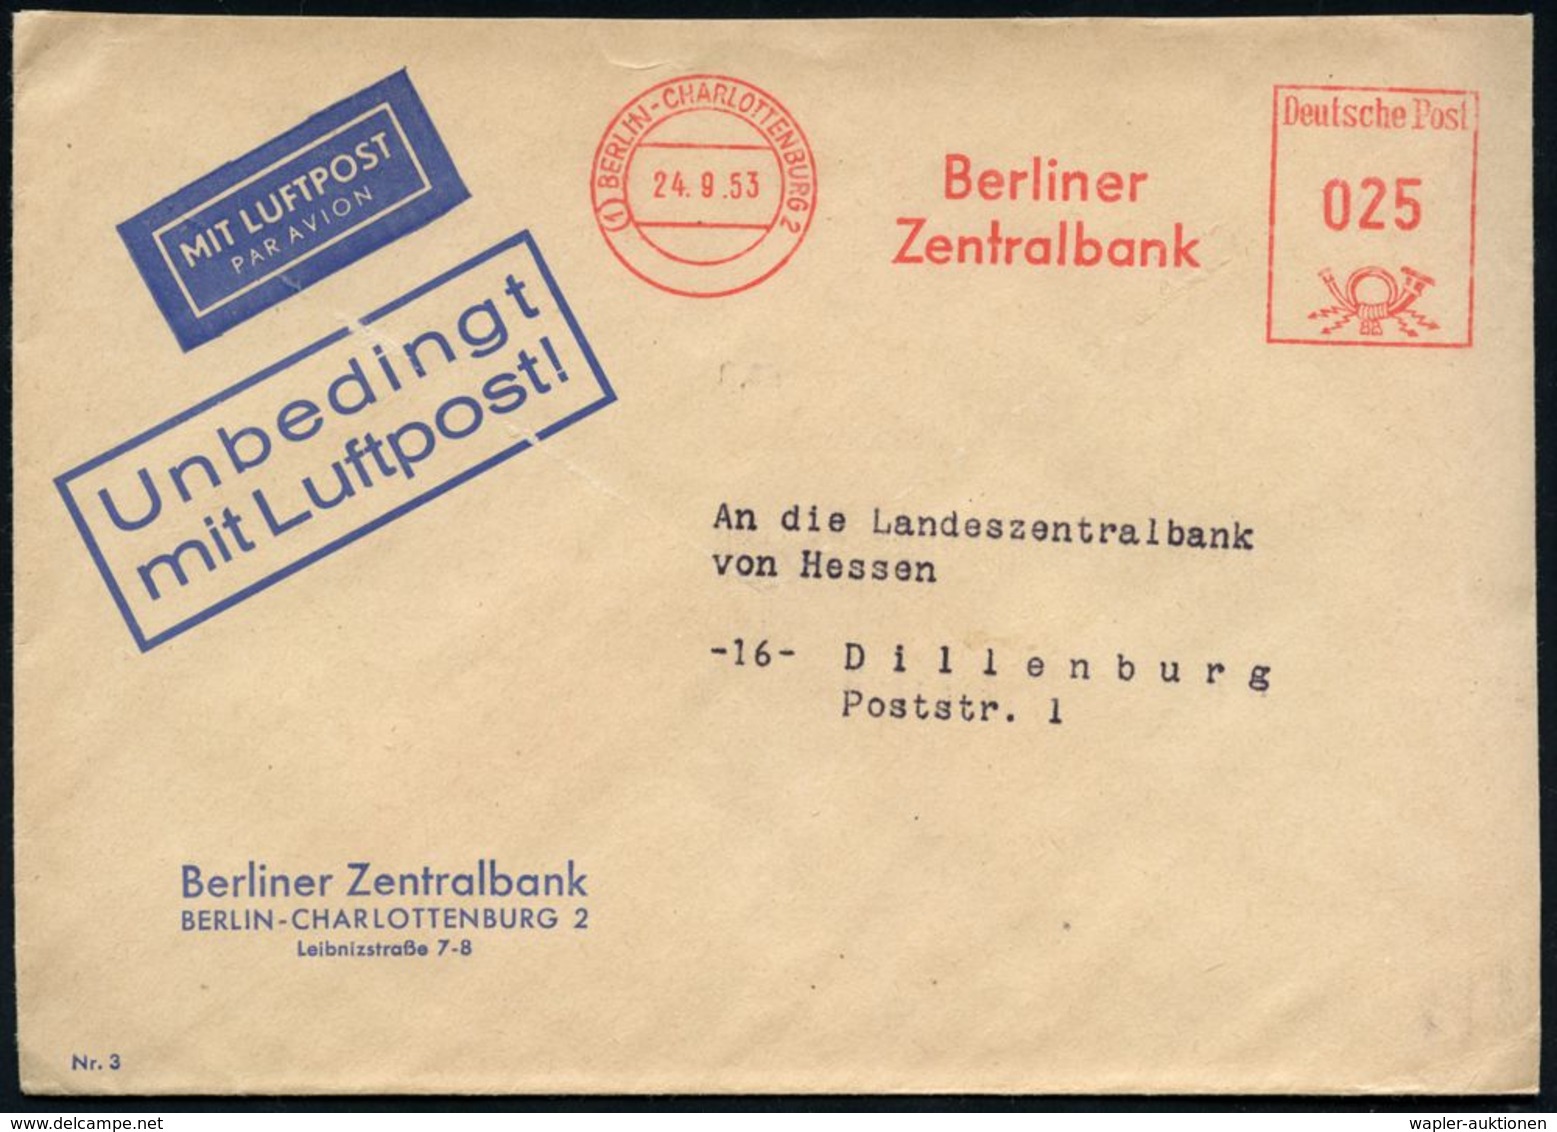 (1) BERLIN-CHARLOTTENBURG 2/ Berliner/ Zentralbank 1953 (24.9.) AFS 025 Pf. Auf Dienst-Bf.: Berliner Zentralbank Mit Vor - Sonstige (Luft)